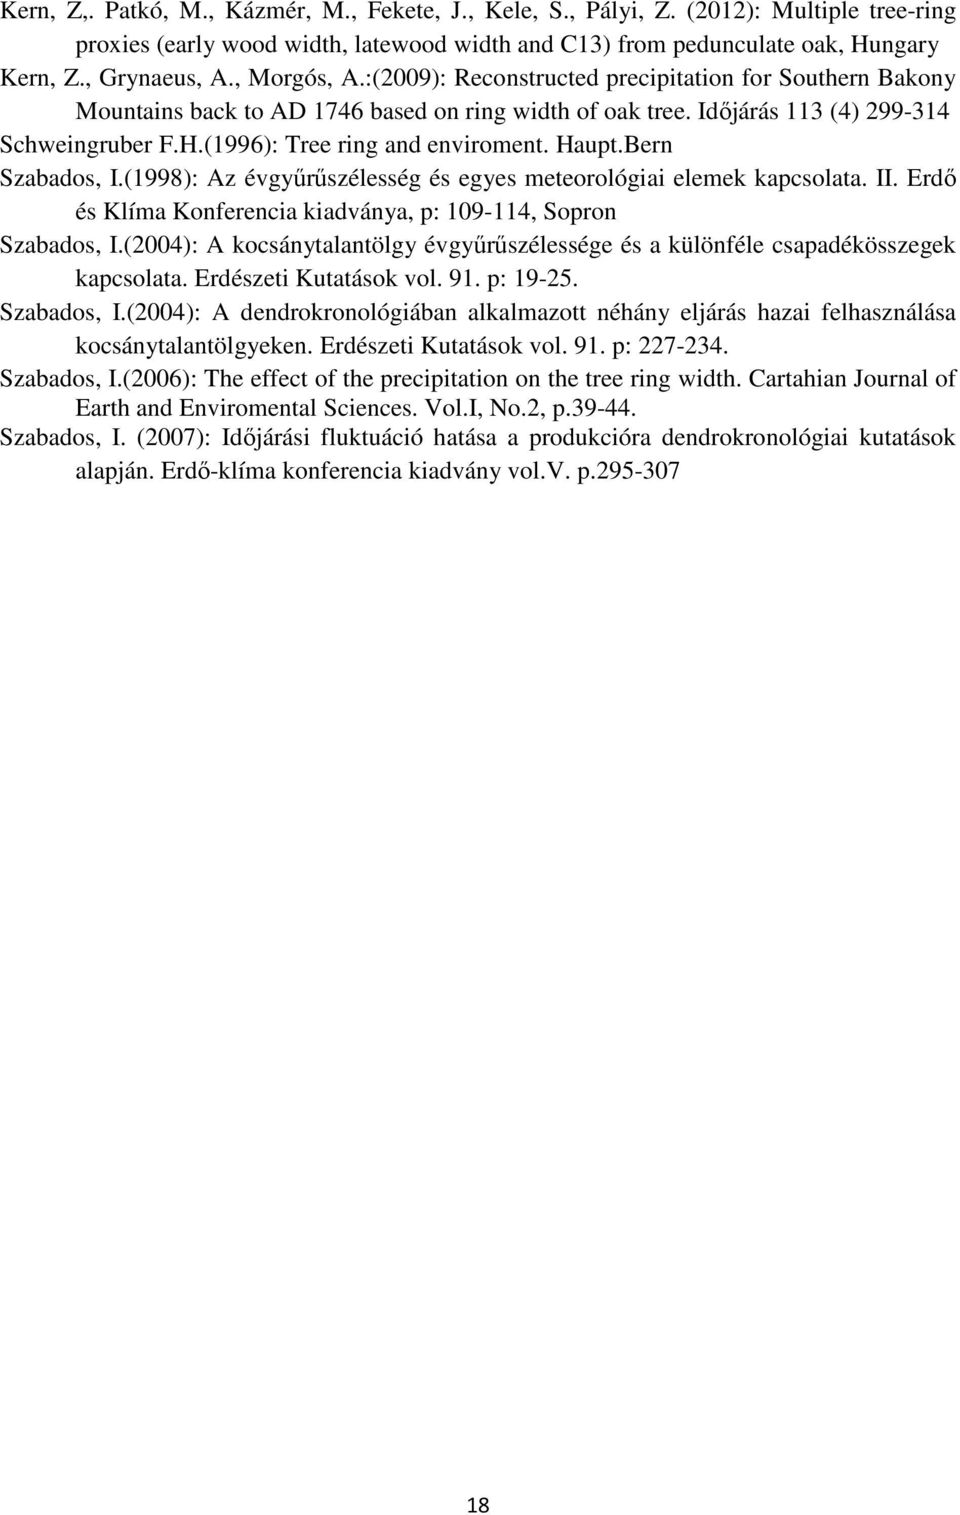 (1996): Tree ring and enviroment. Haupt.Bern Szabados, I.(1998): Az évgyűrűszélesség és egyes meteorológiai elemek kapcsolata. II. Erdő és Klíma Konferencia kiadványa, p: 109-114, Sopron Szabados, I.